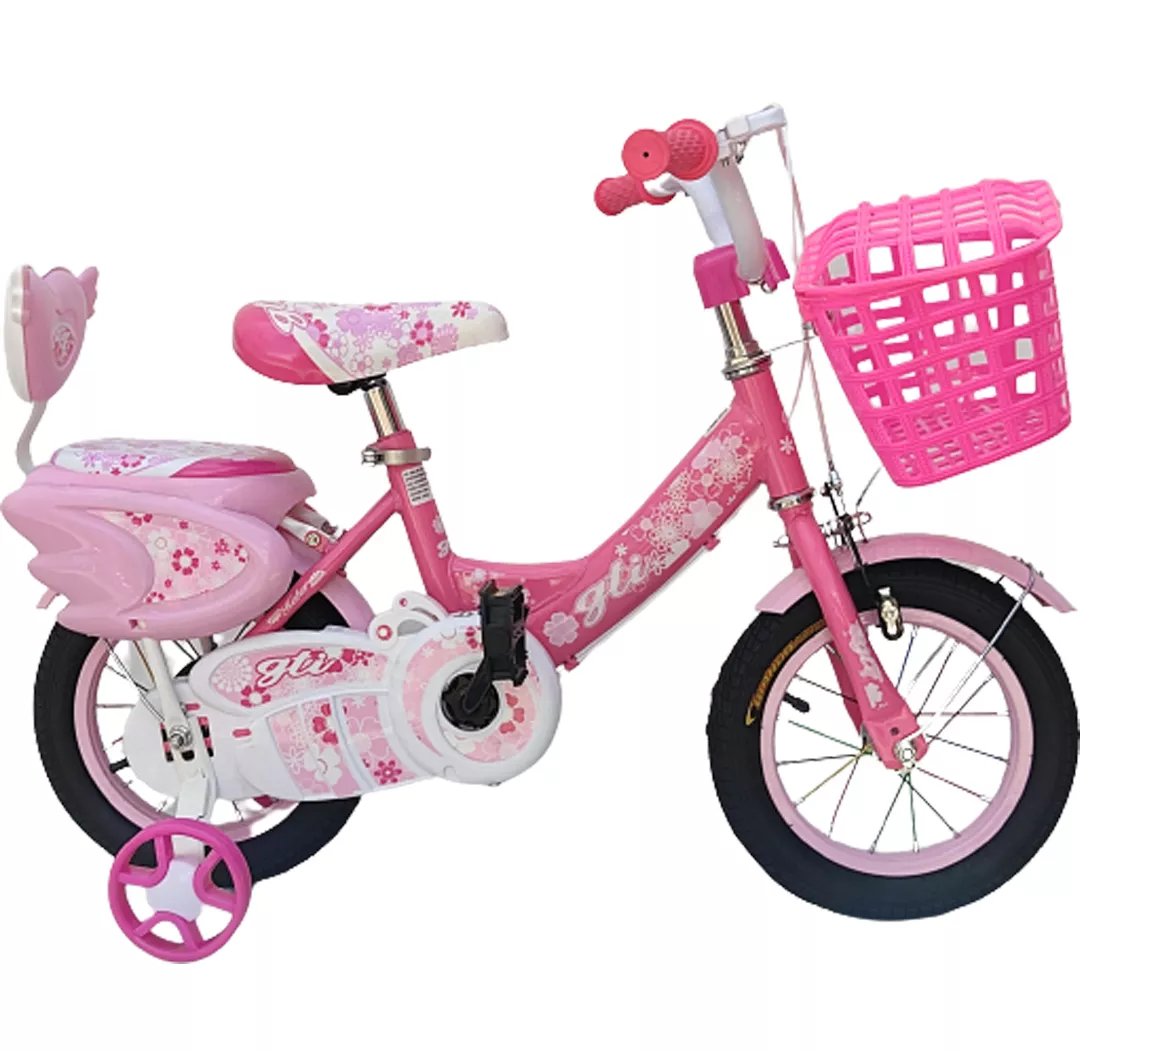 GTI Bicicicleta princess 12 1/2” de niña